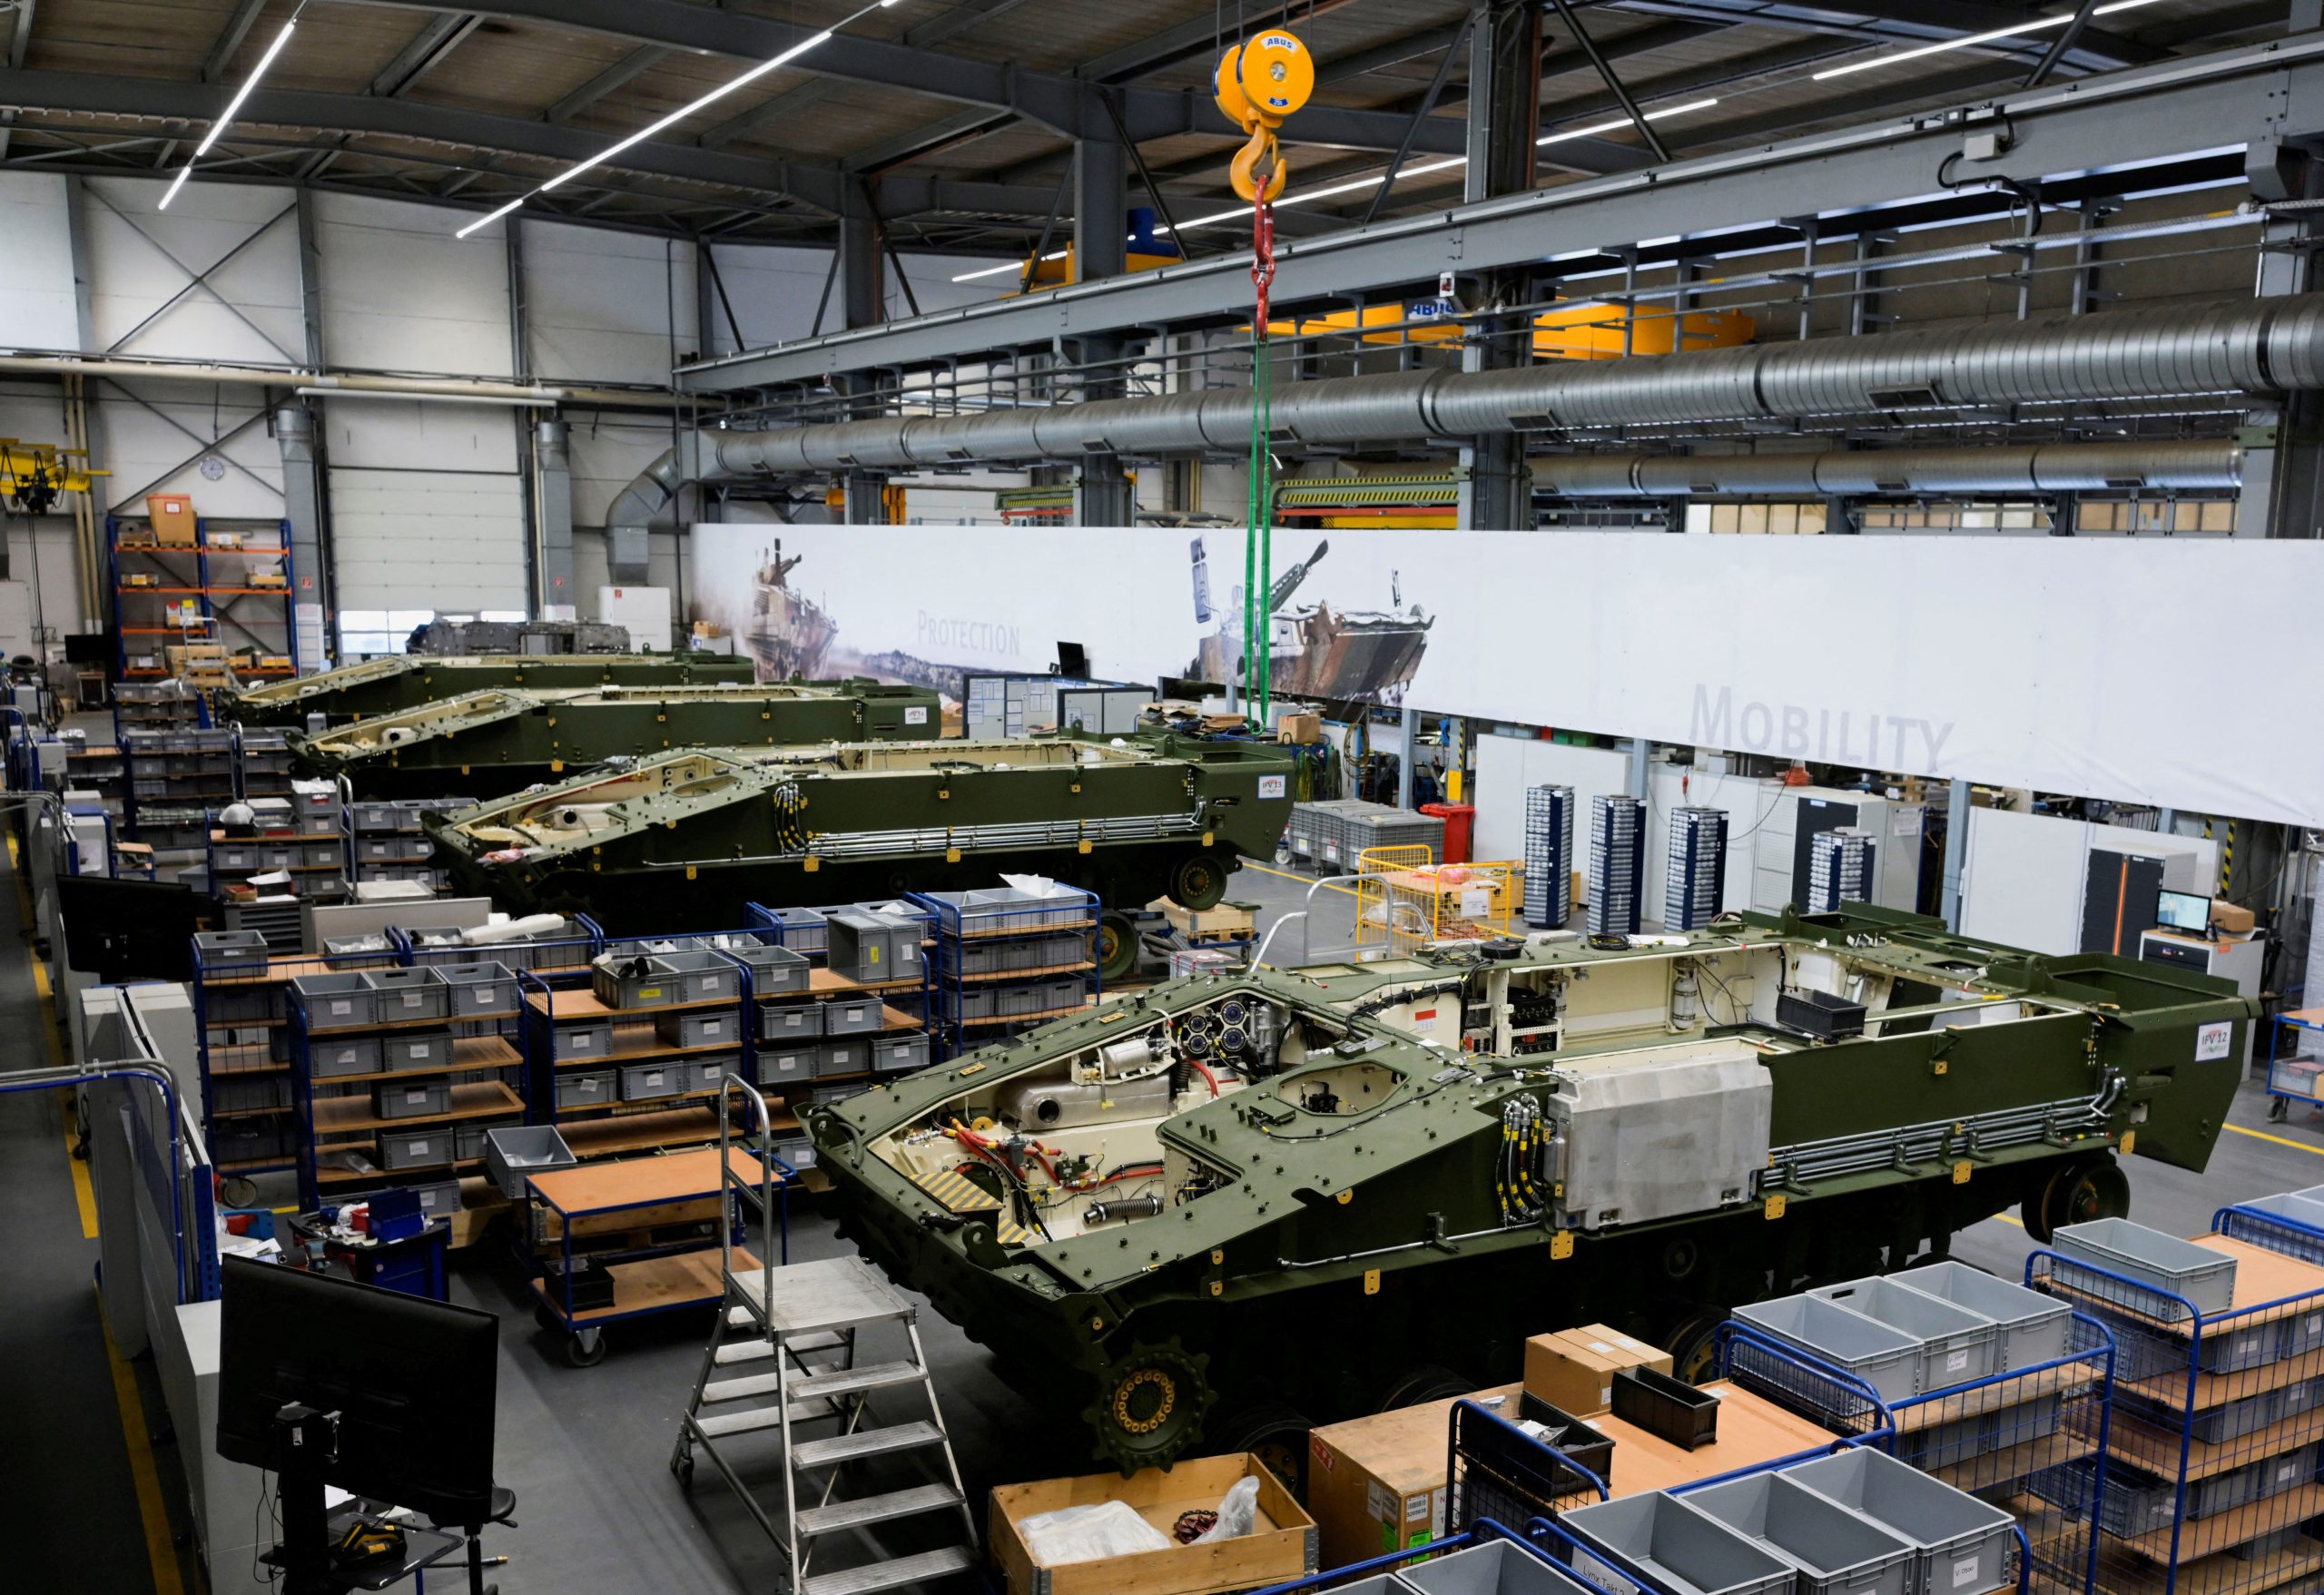 Κίεβο: Σε τρεις μήνες ξεκινά το εργοστάσιο κατασκευής αρμάτων της Rheinmetall – Θα παράγει 400 άρματα το χρόνο